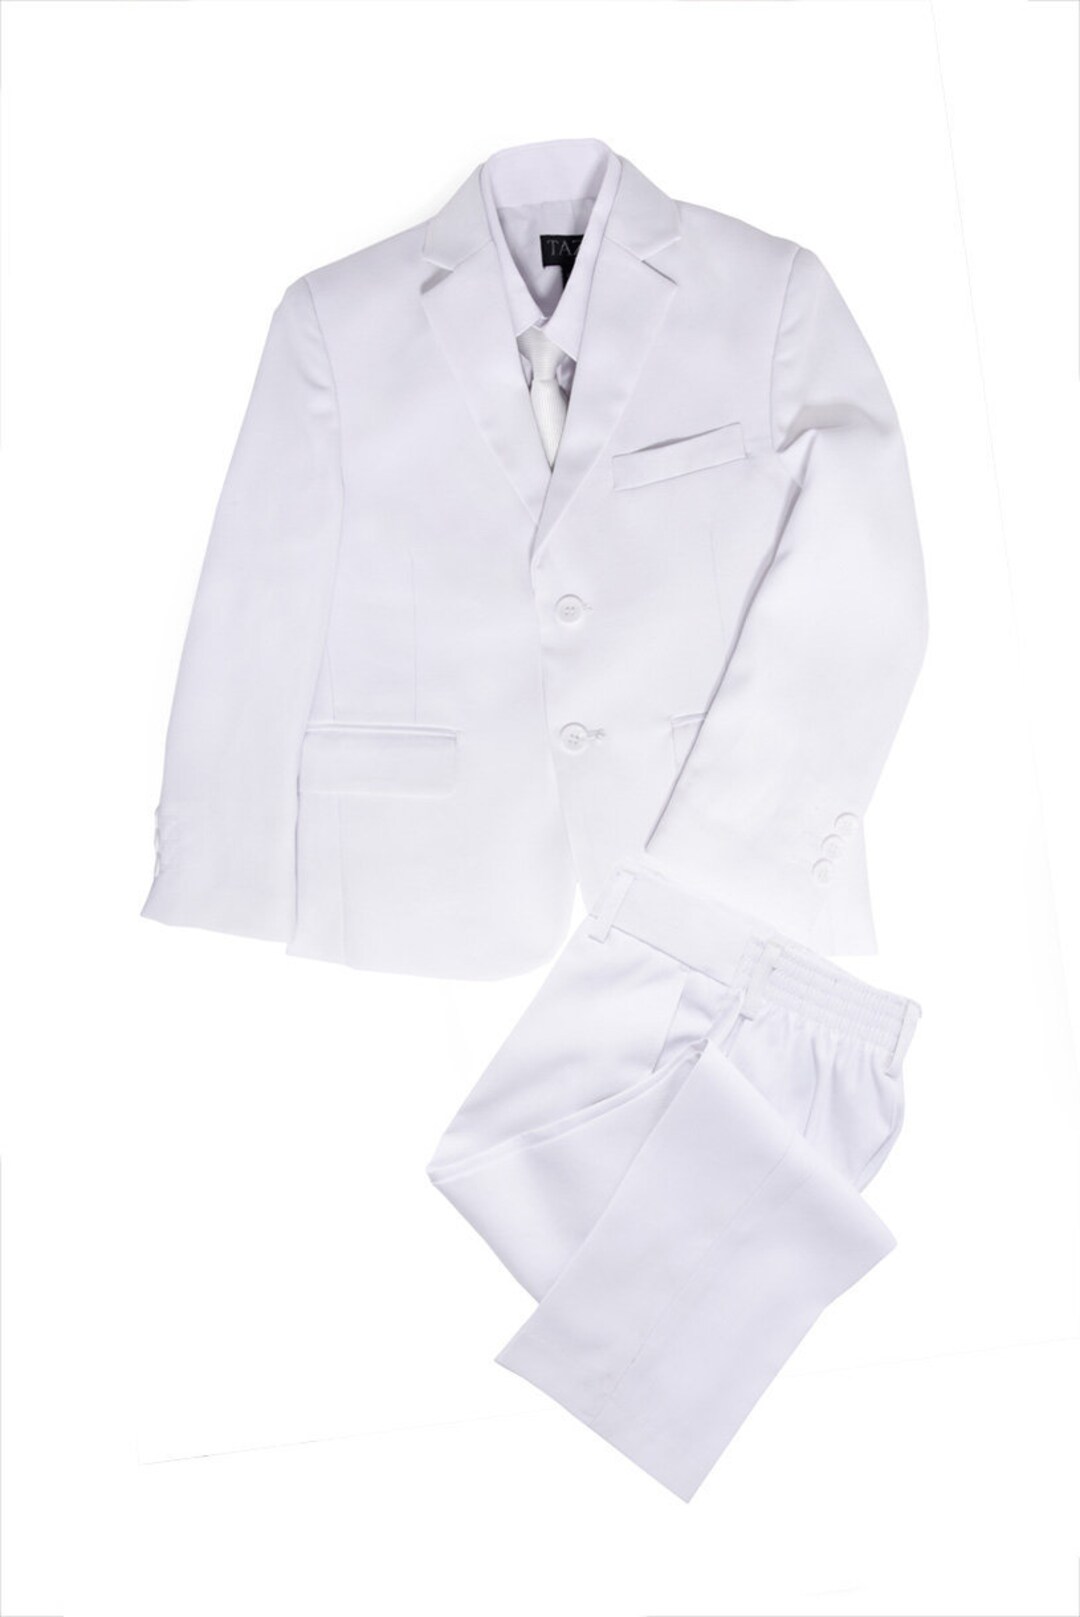 Boys Premium White Five Piece Suit Set - Etsy